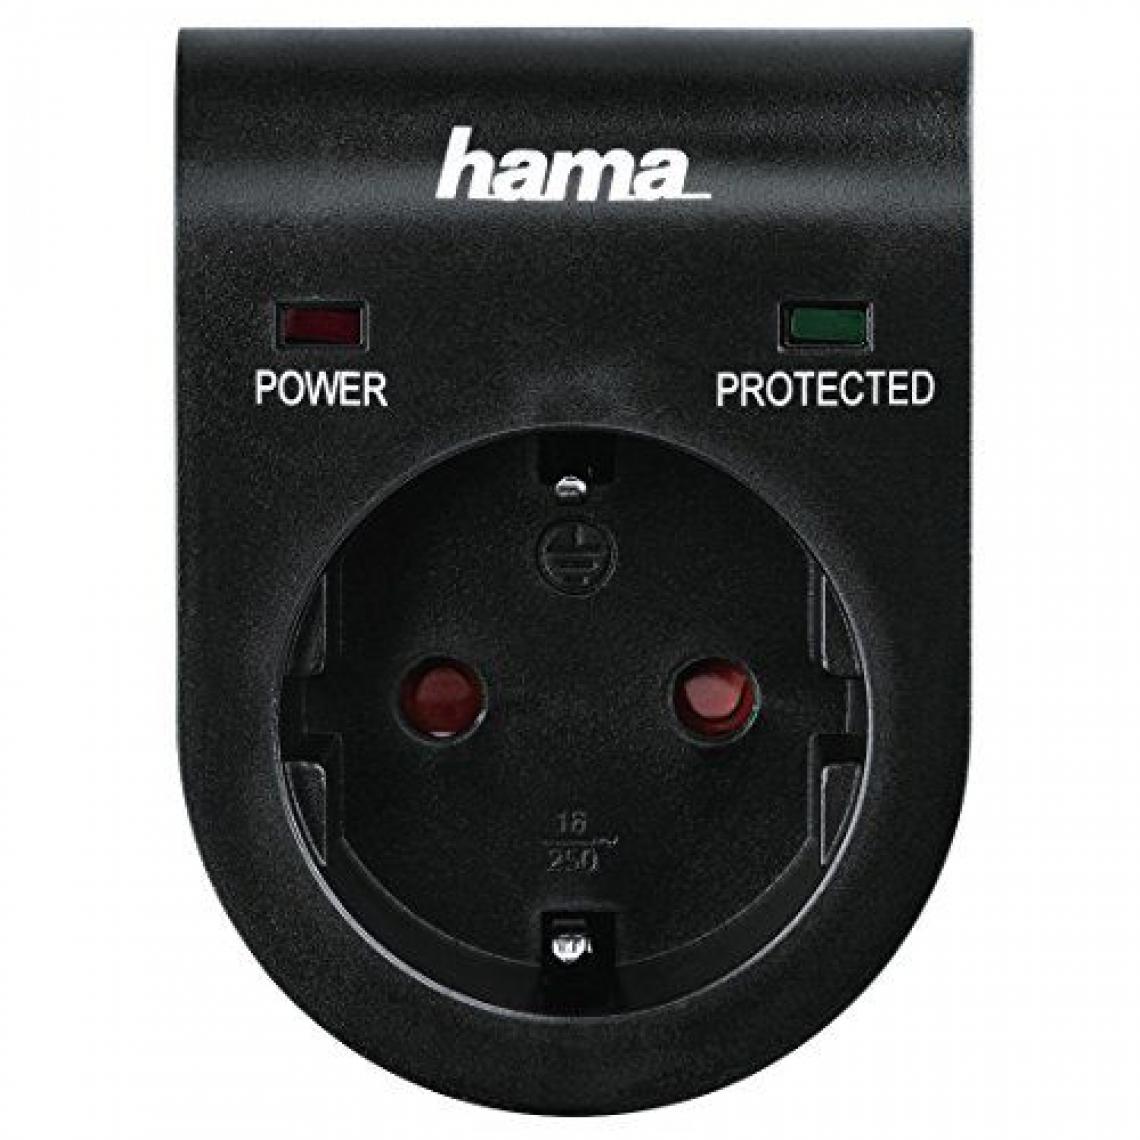 Hama - Adaptateur de protection antisurtension Hama pour par ex. installation téléphonique, ordinateurs, postes hi-fi et téléviseurs, jusqu'à 3500 W, 230 V, double affichage de statut LED, verrouillage de sécurité enfant intégré - Blocs multiprises